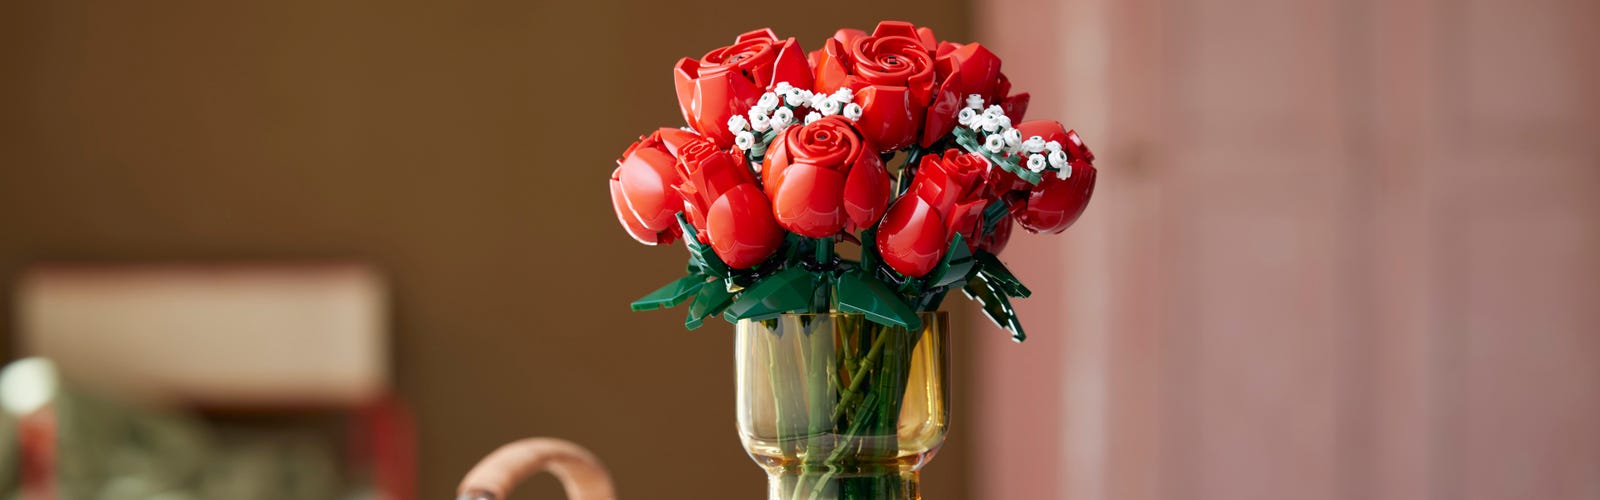 Regalos para San Valentín para asombrar a tu pareja, novio, novia, Manualidades para San Valentín, regalos para el 14 de febrero, arreglos  florales para San Valentín